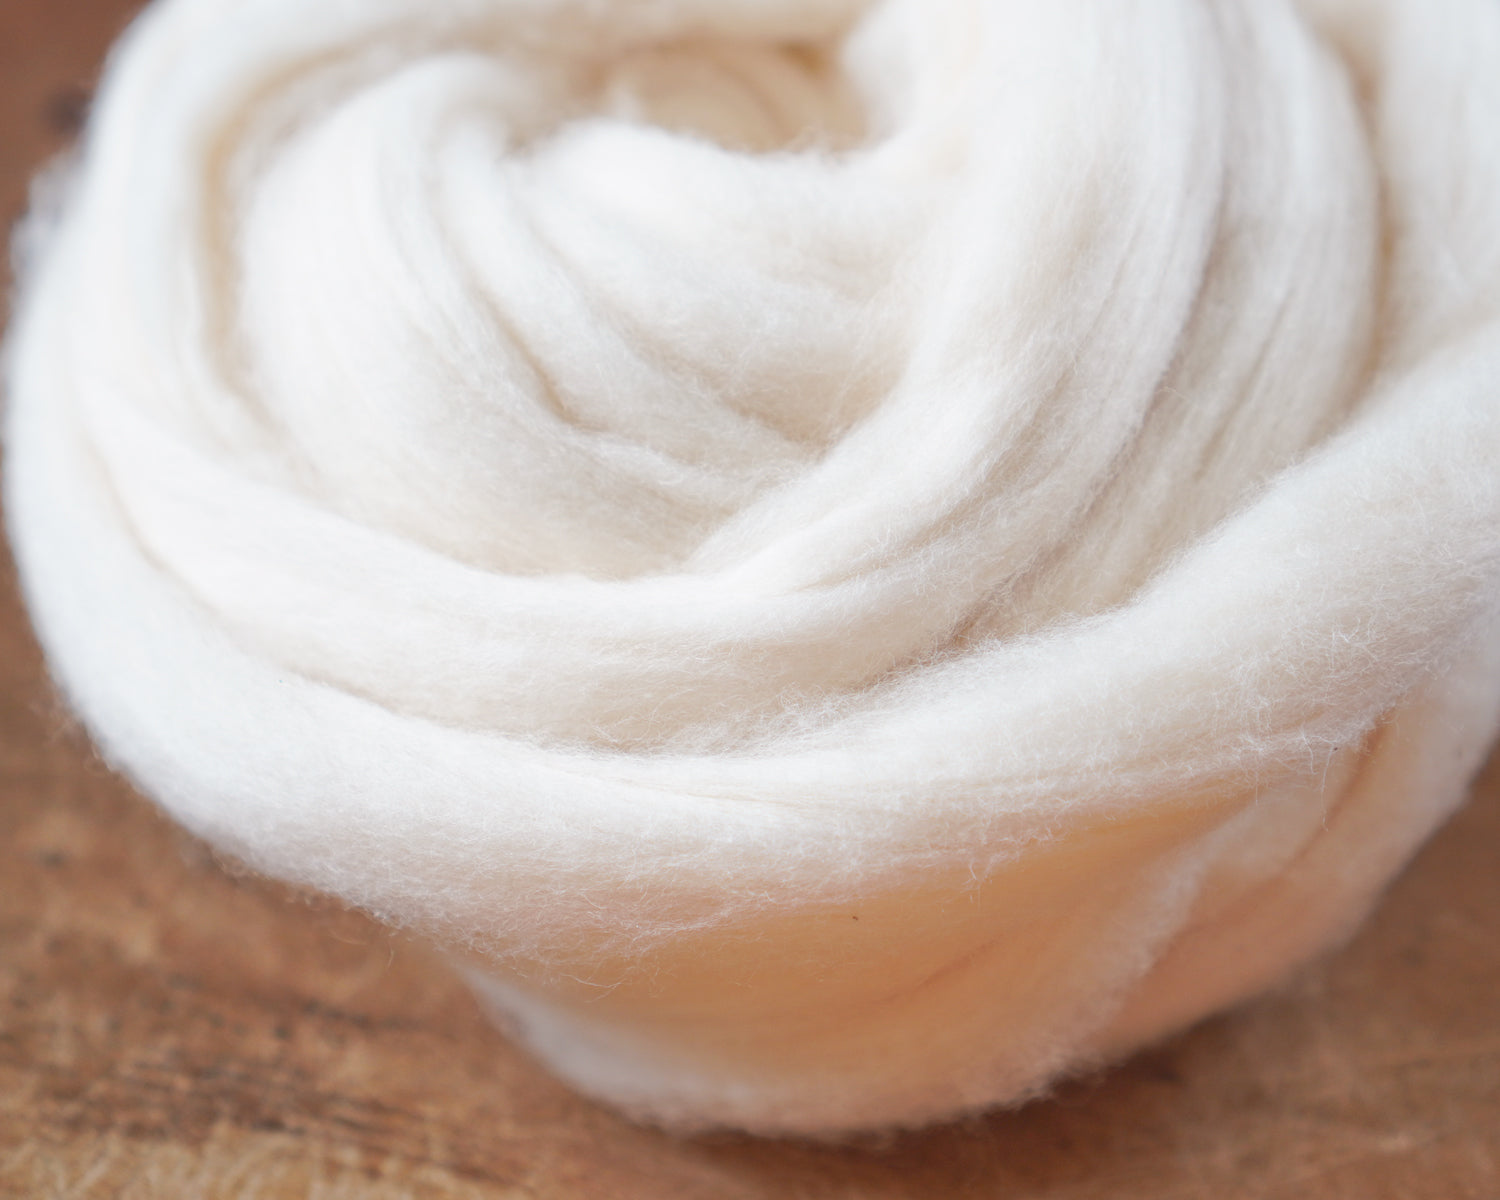 Cotton Roving for Spun Cotton Crafts - Long Staple Cotton Sliver, 3 Ounces